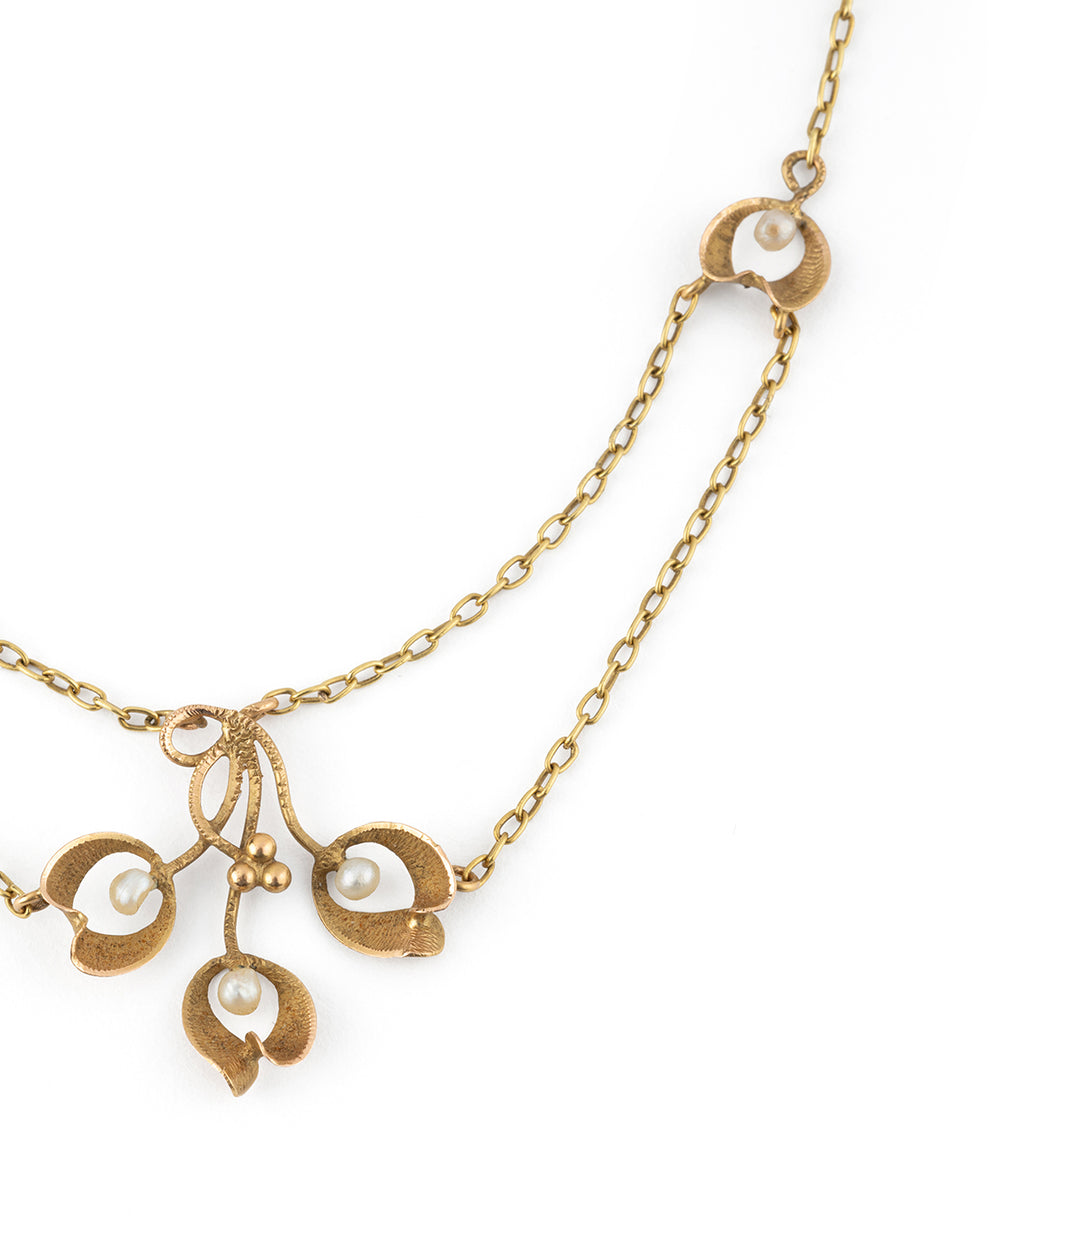 Art nouveau necklace 18k gold pearls "Kara" - Caillou Paris